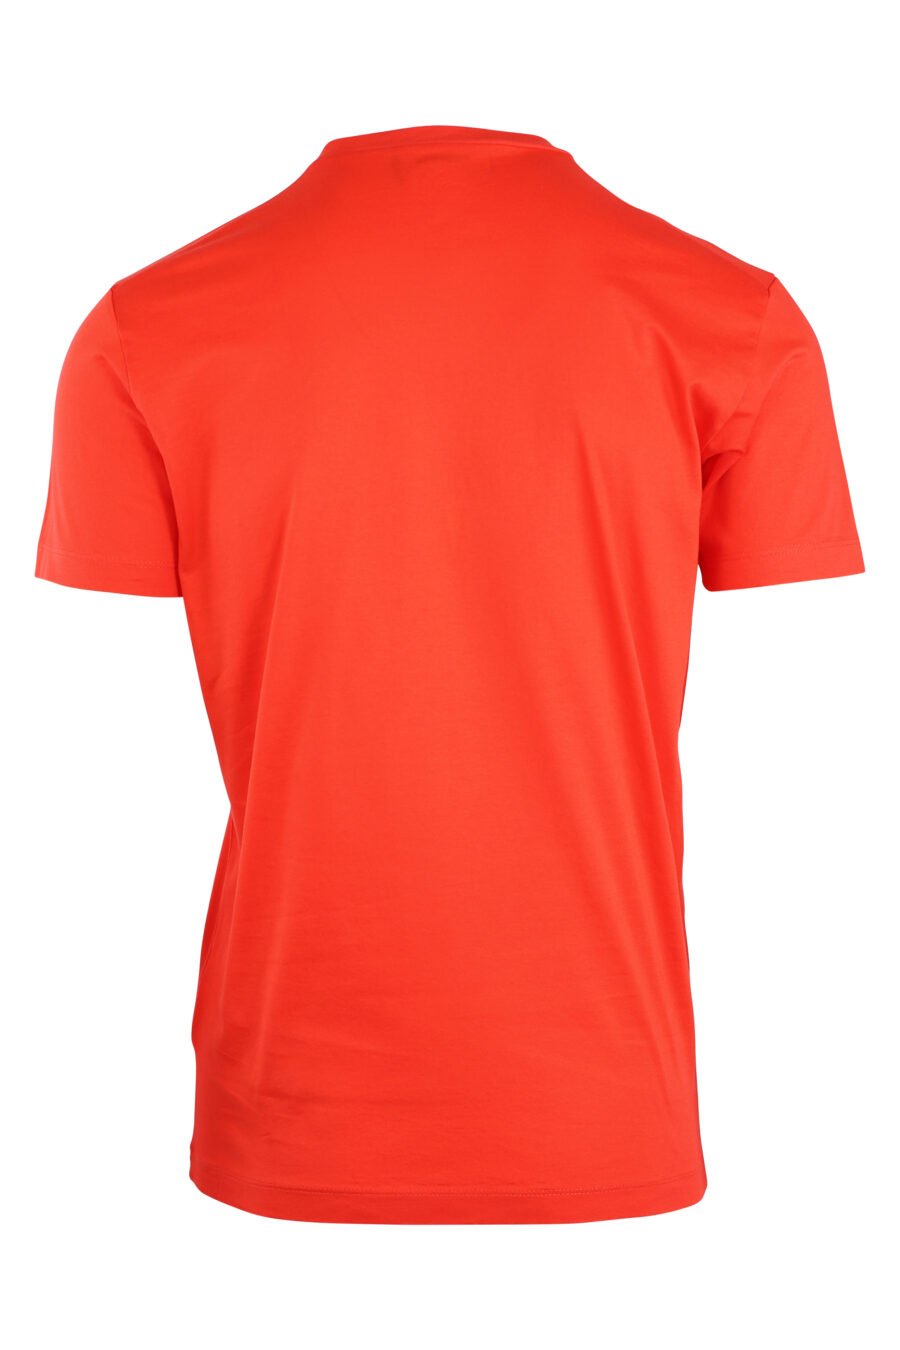 Camiseta naranja con minilogo "icon" - IMG 8925